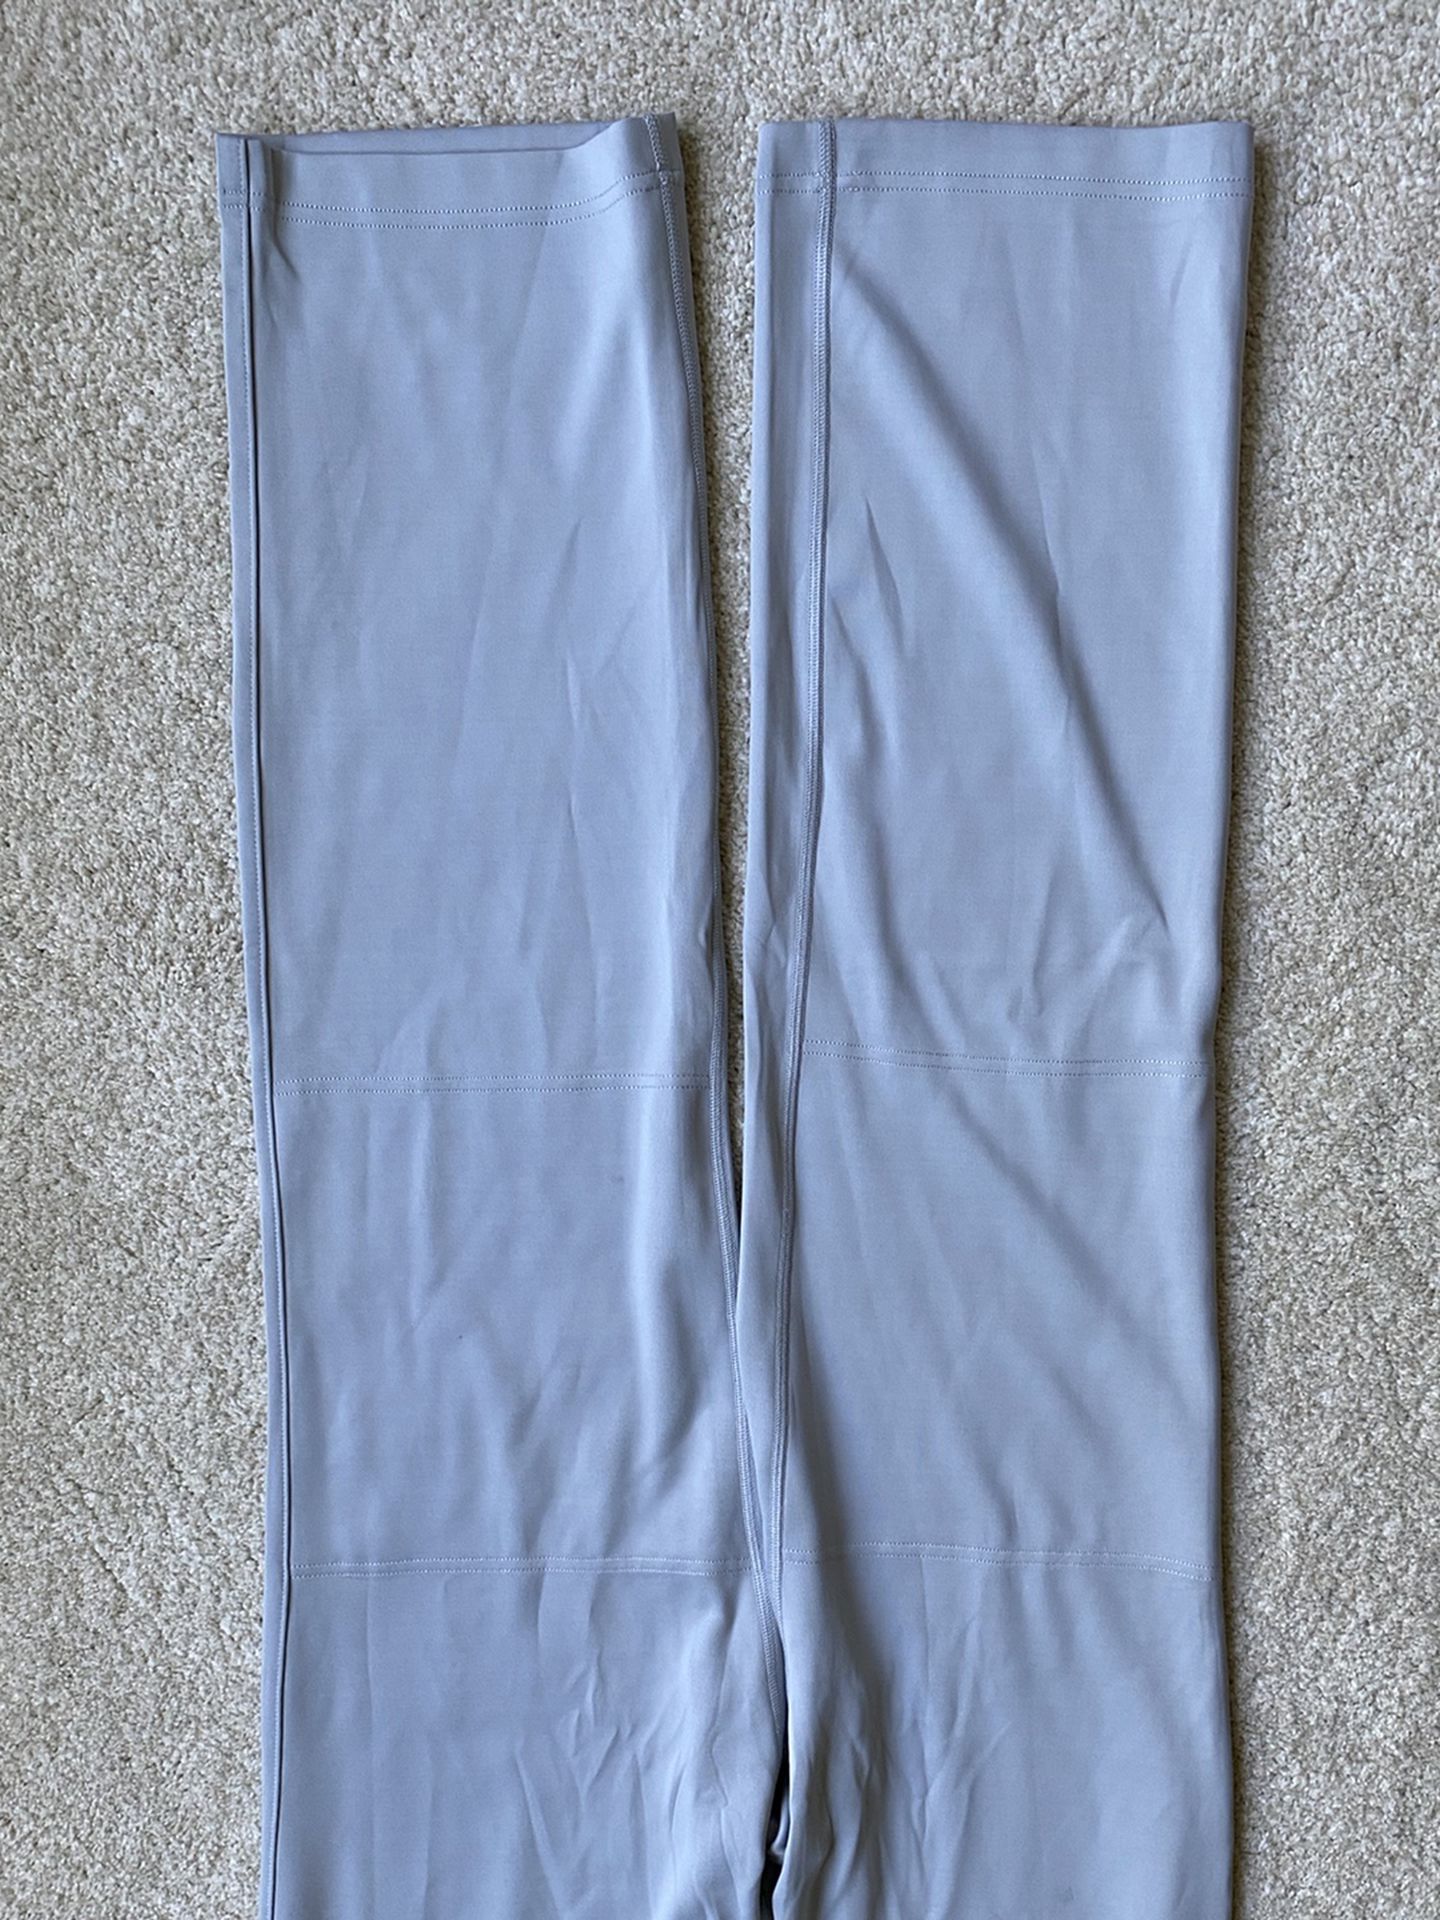 Marucci gray baseball pants  XL